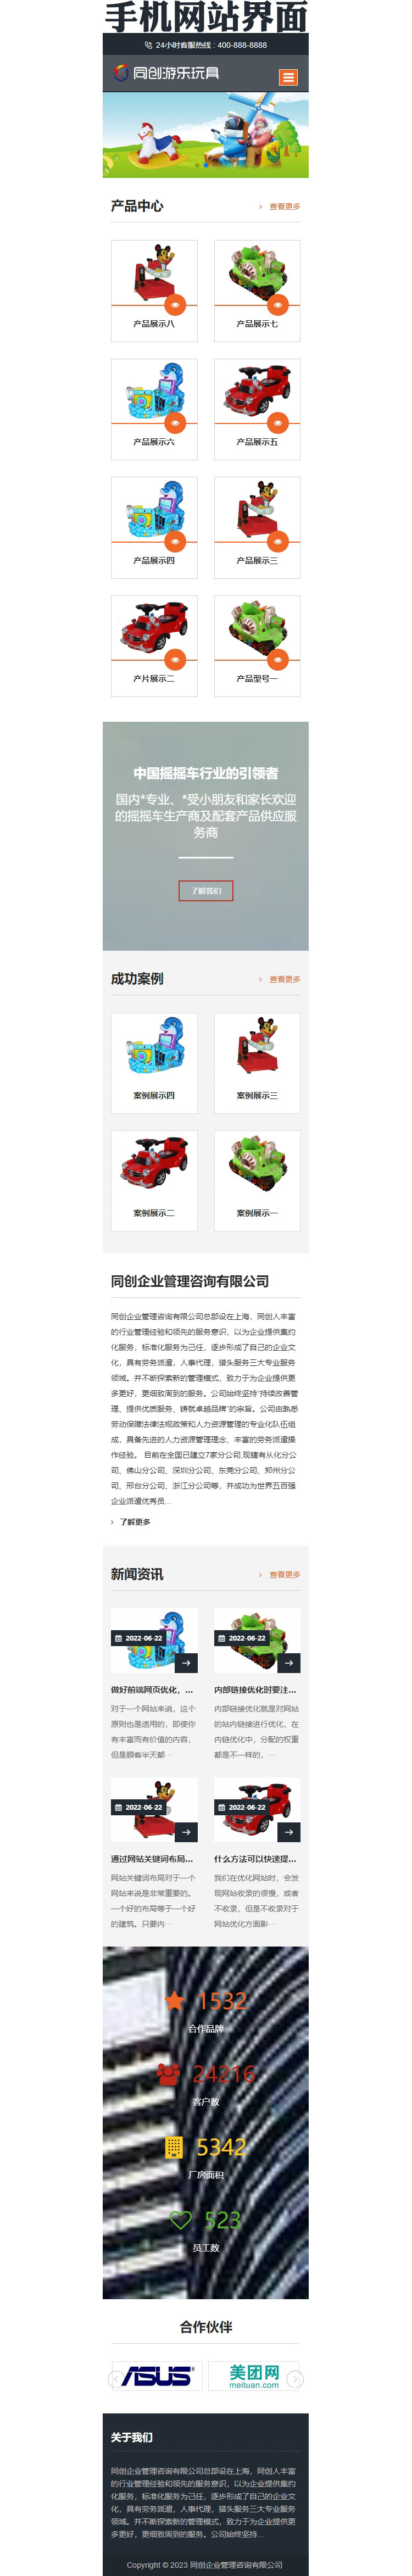 玩具游乐设施网站源码程序-XX003-3